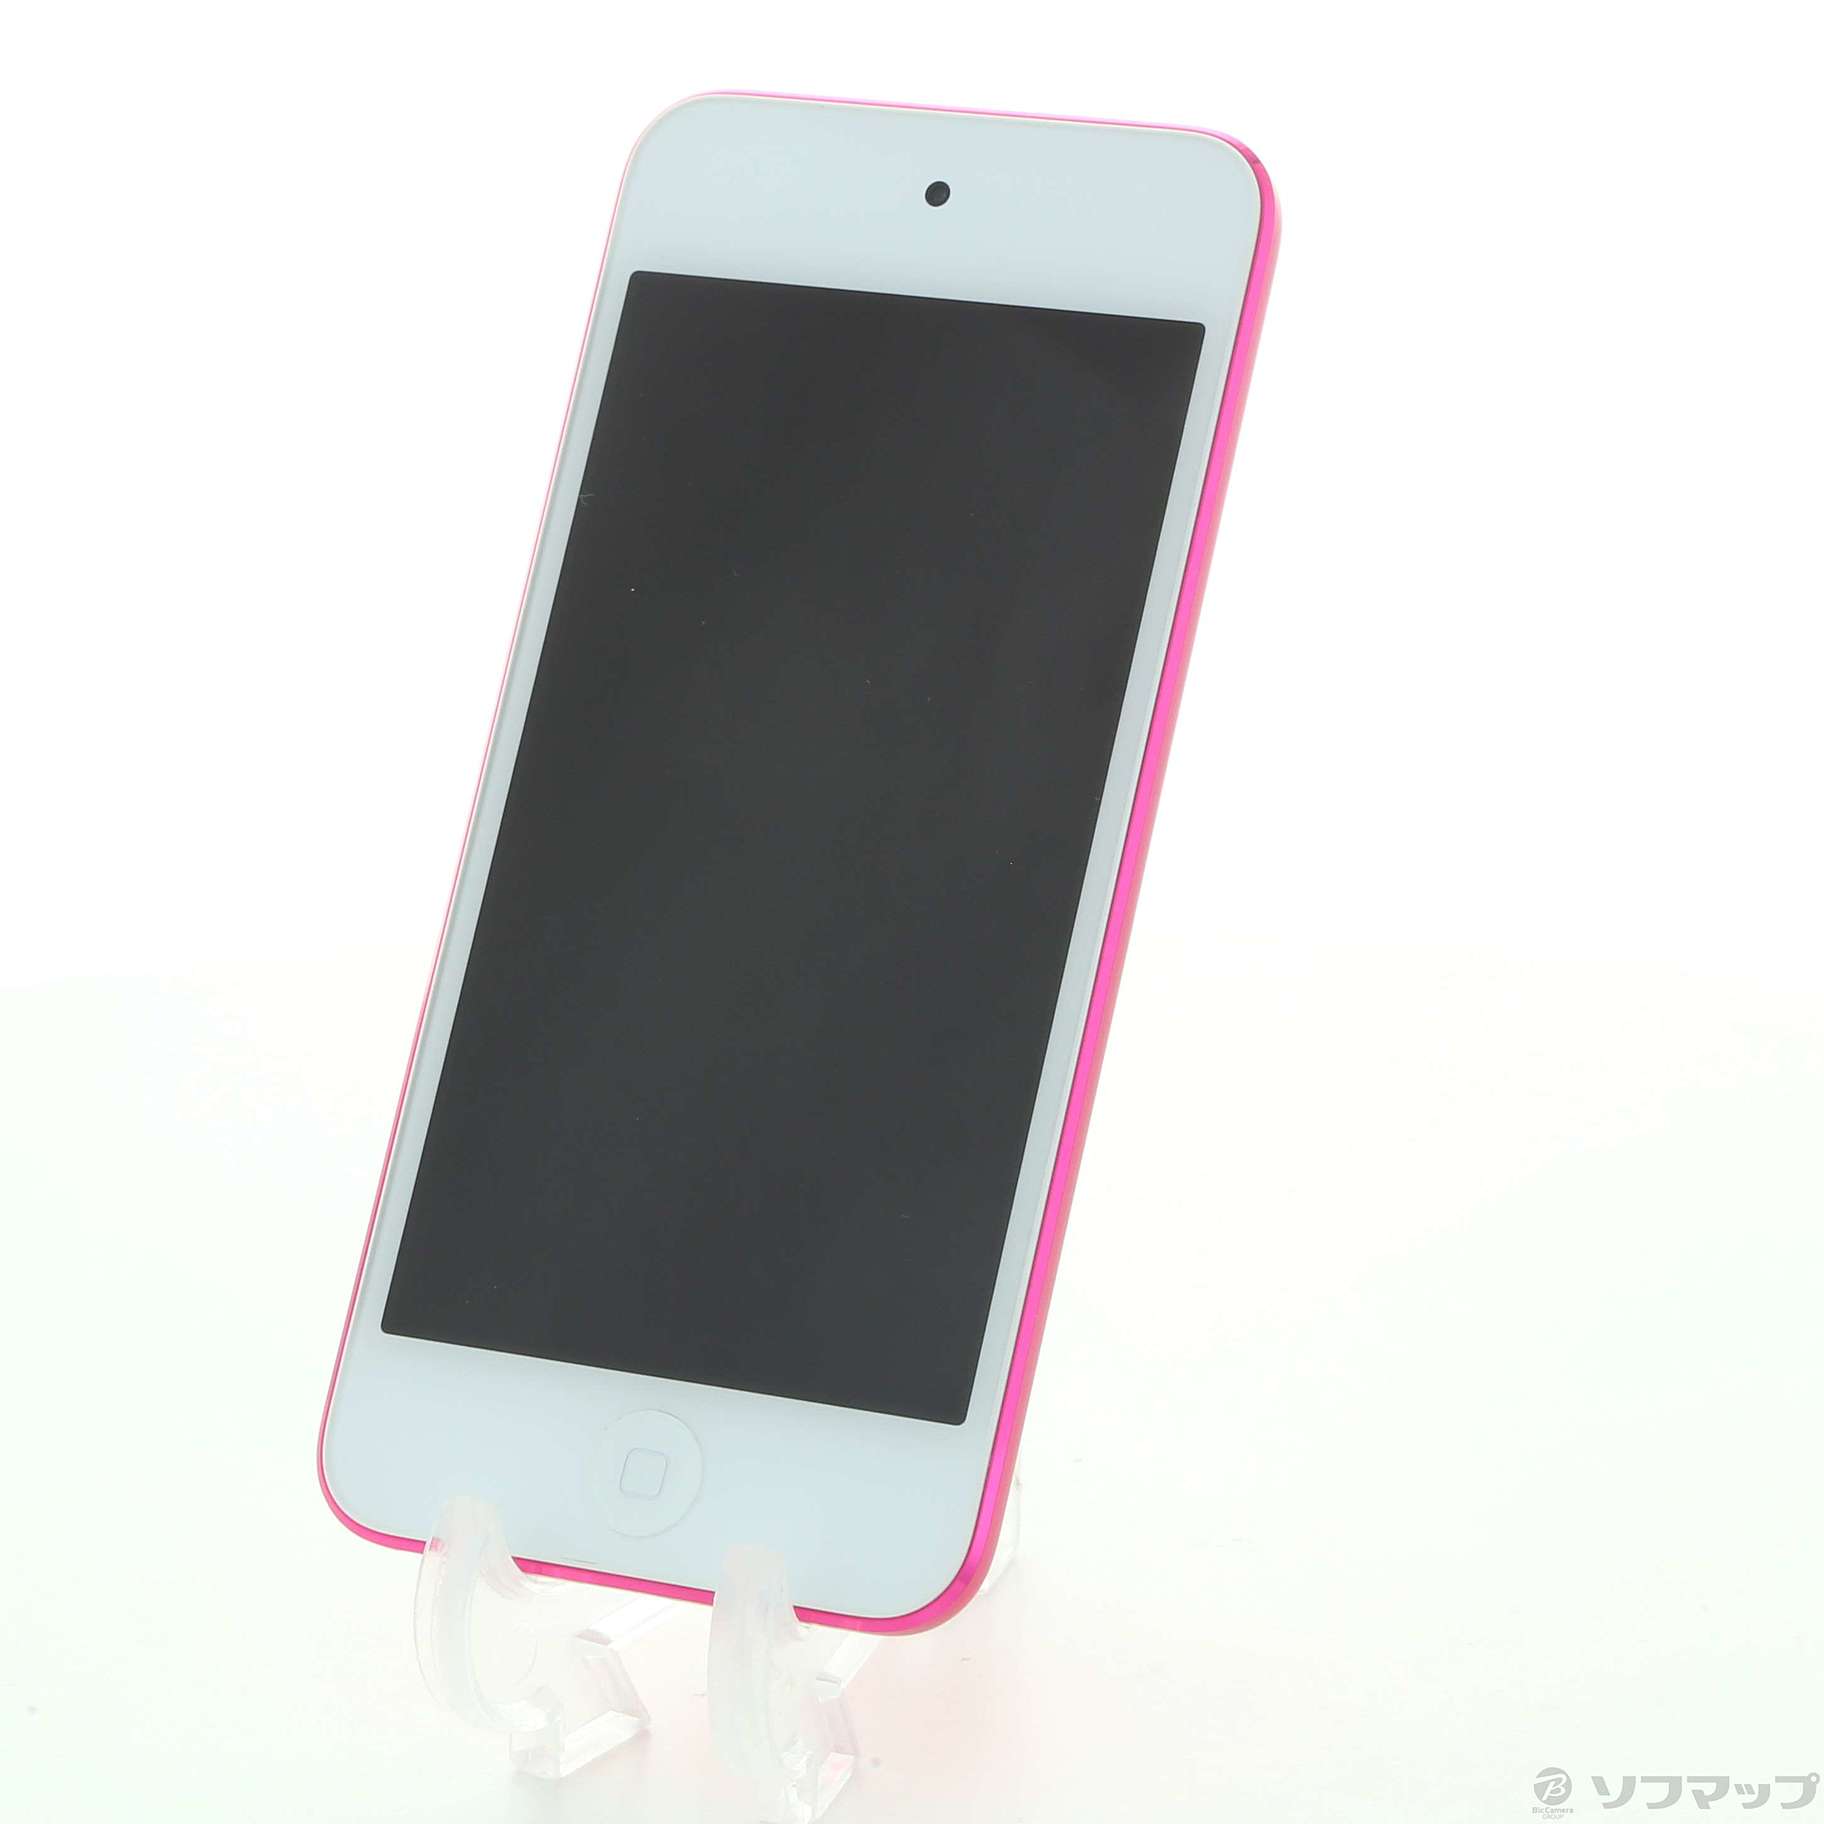 モール  第7世代　ピンク　128GB touch iPod ポータブルプレーヤー